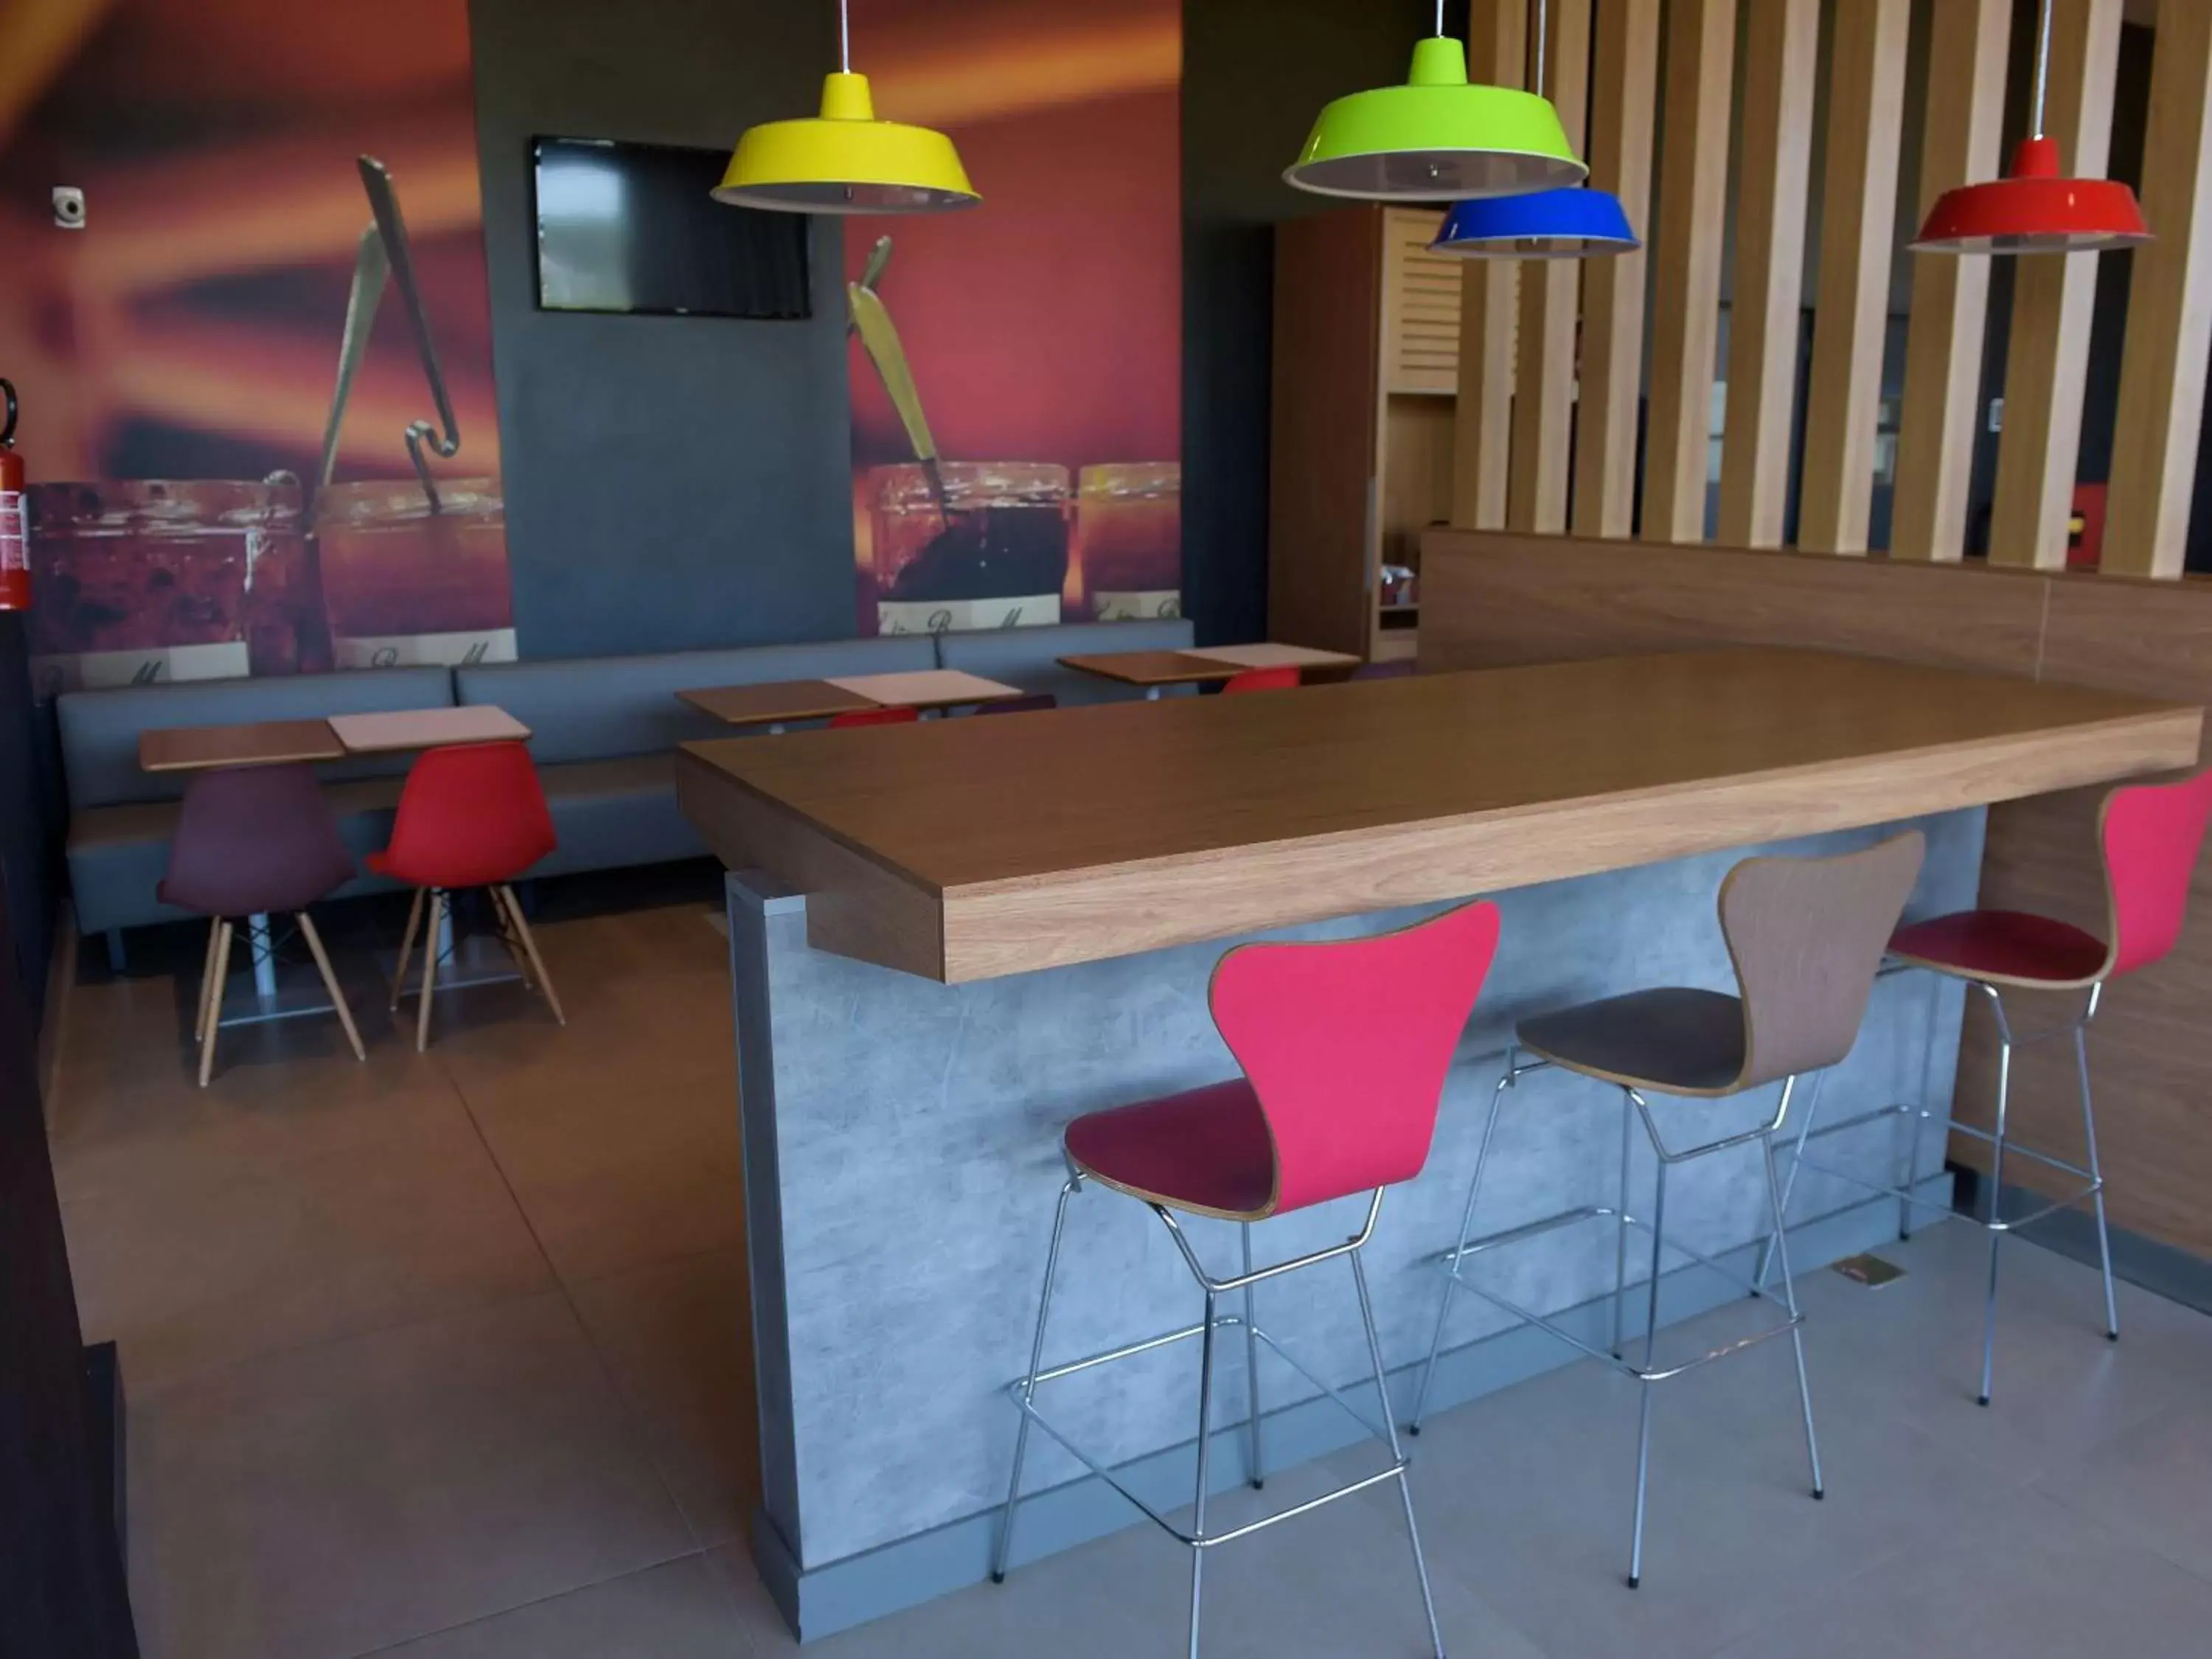 Restaurant/places to eat in ibis Tatui